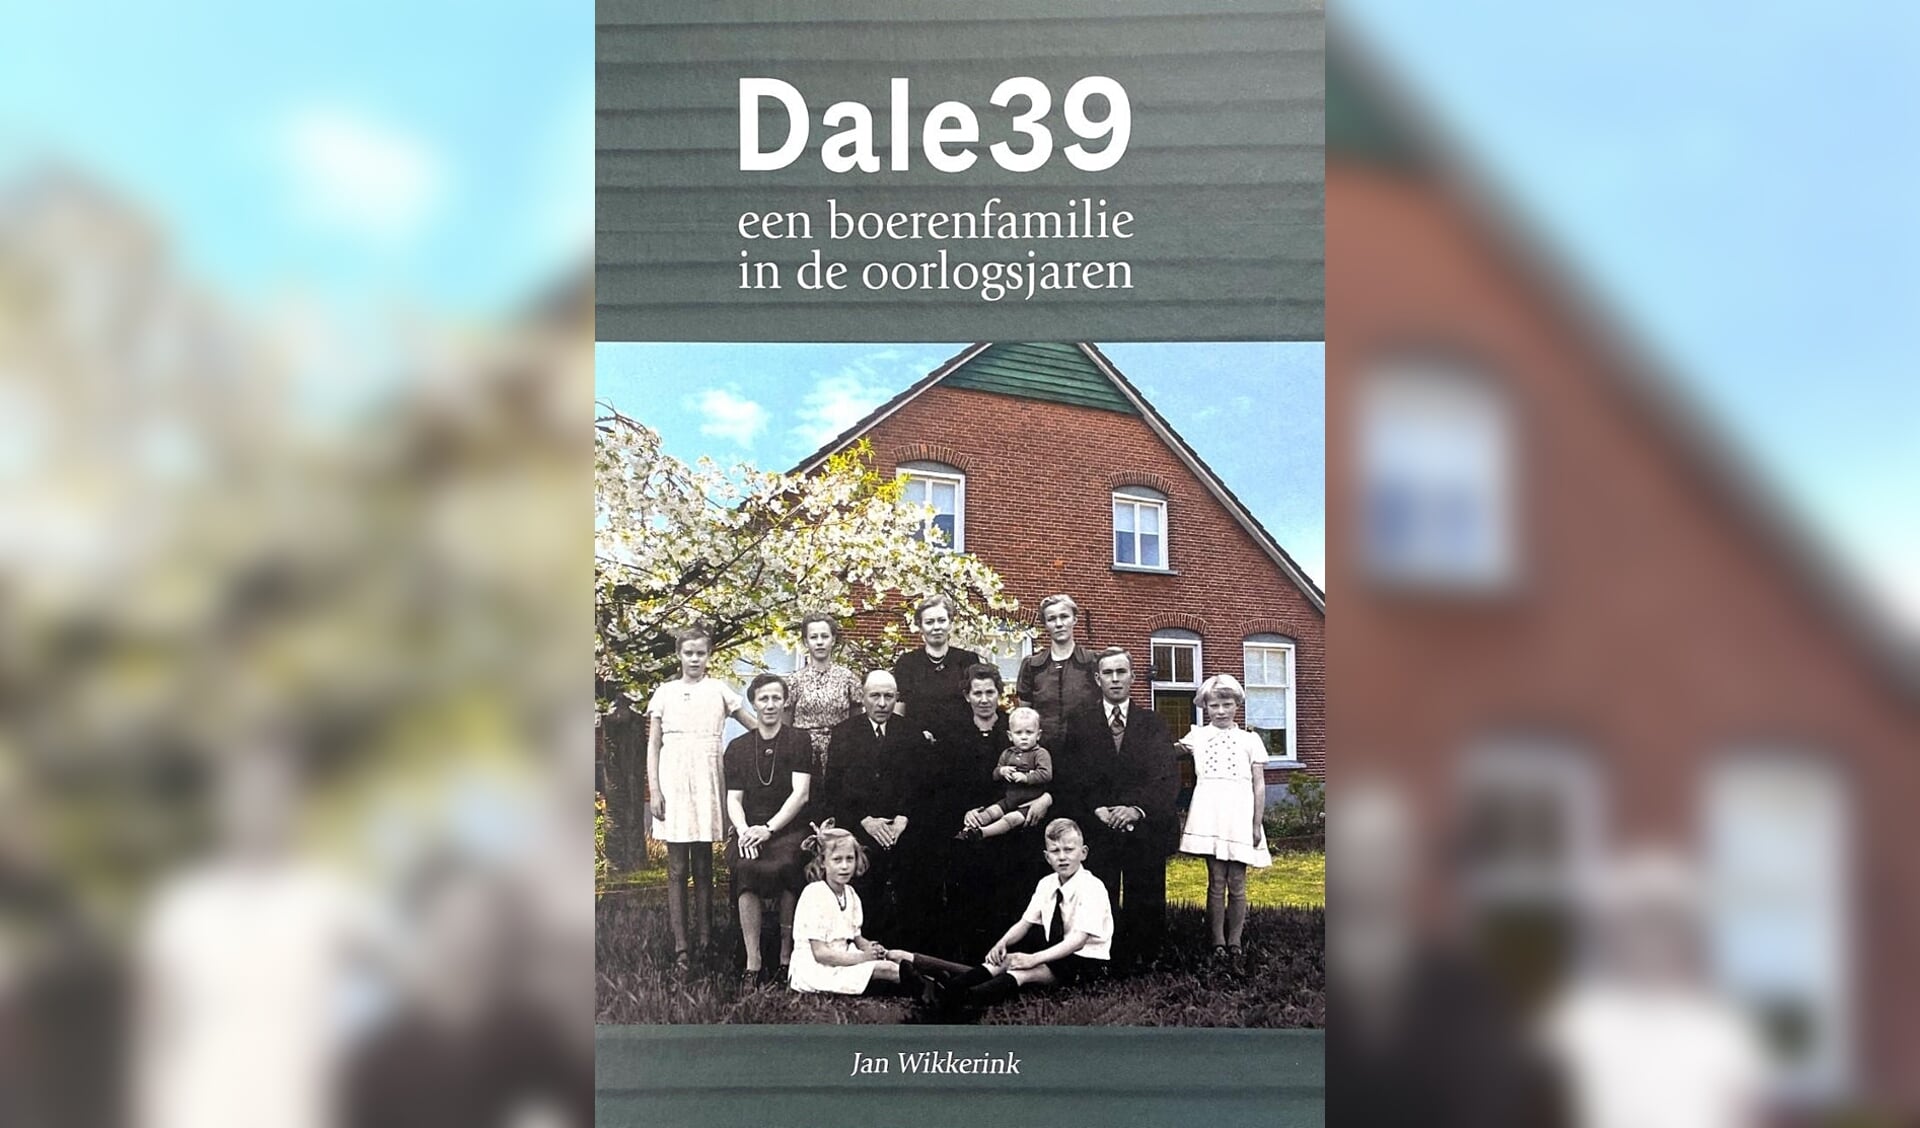 De cover van het boek Dale 39. Foto: PR